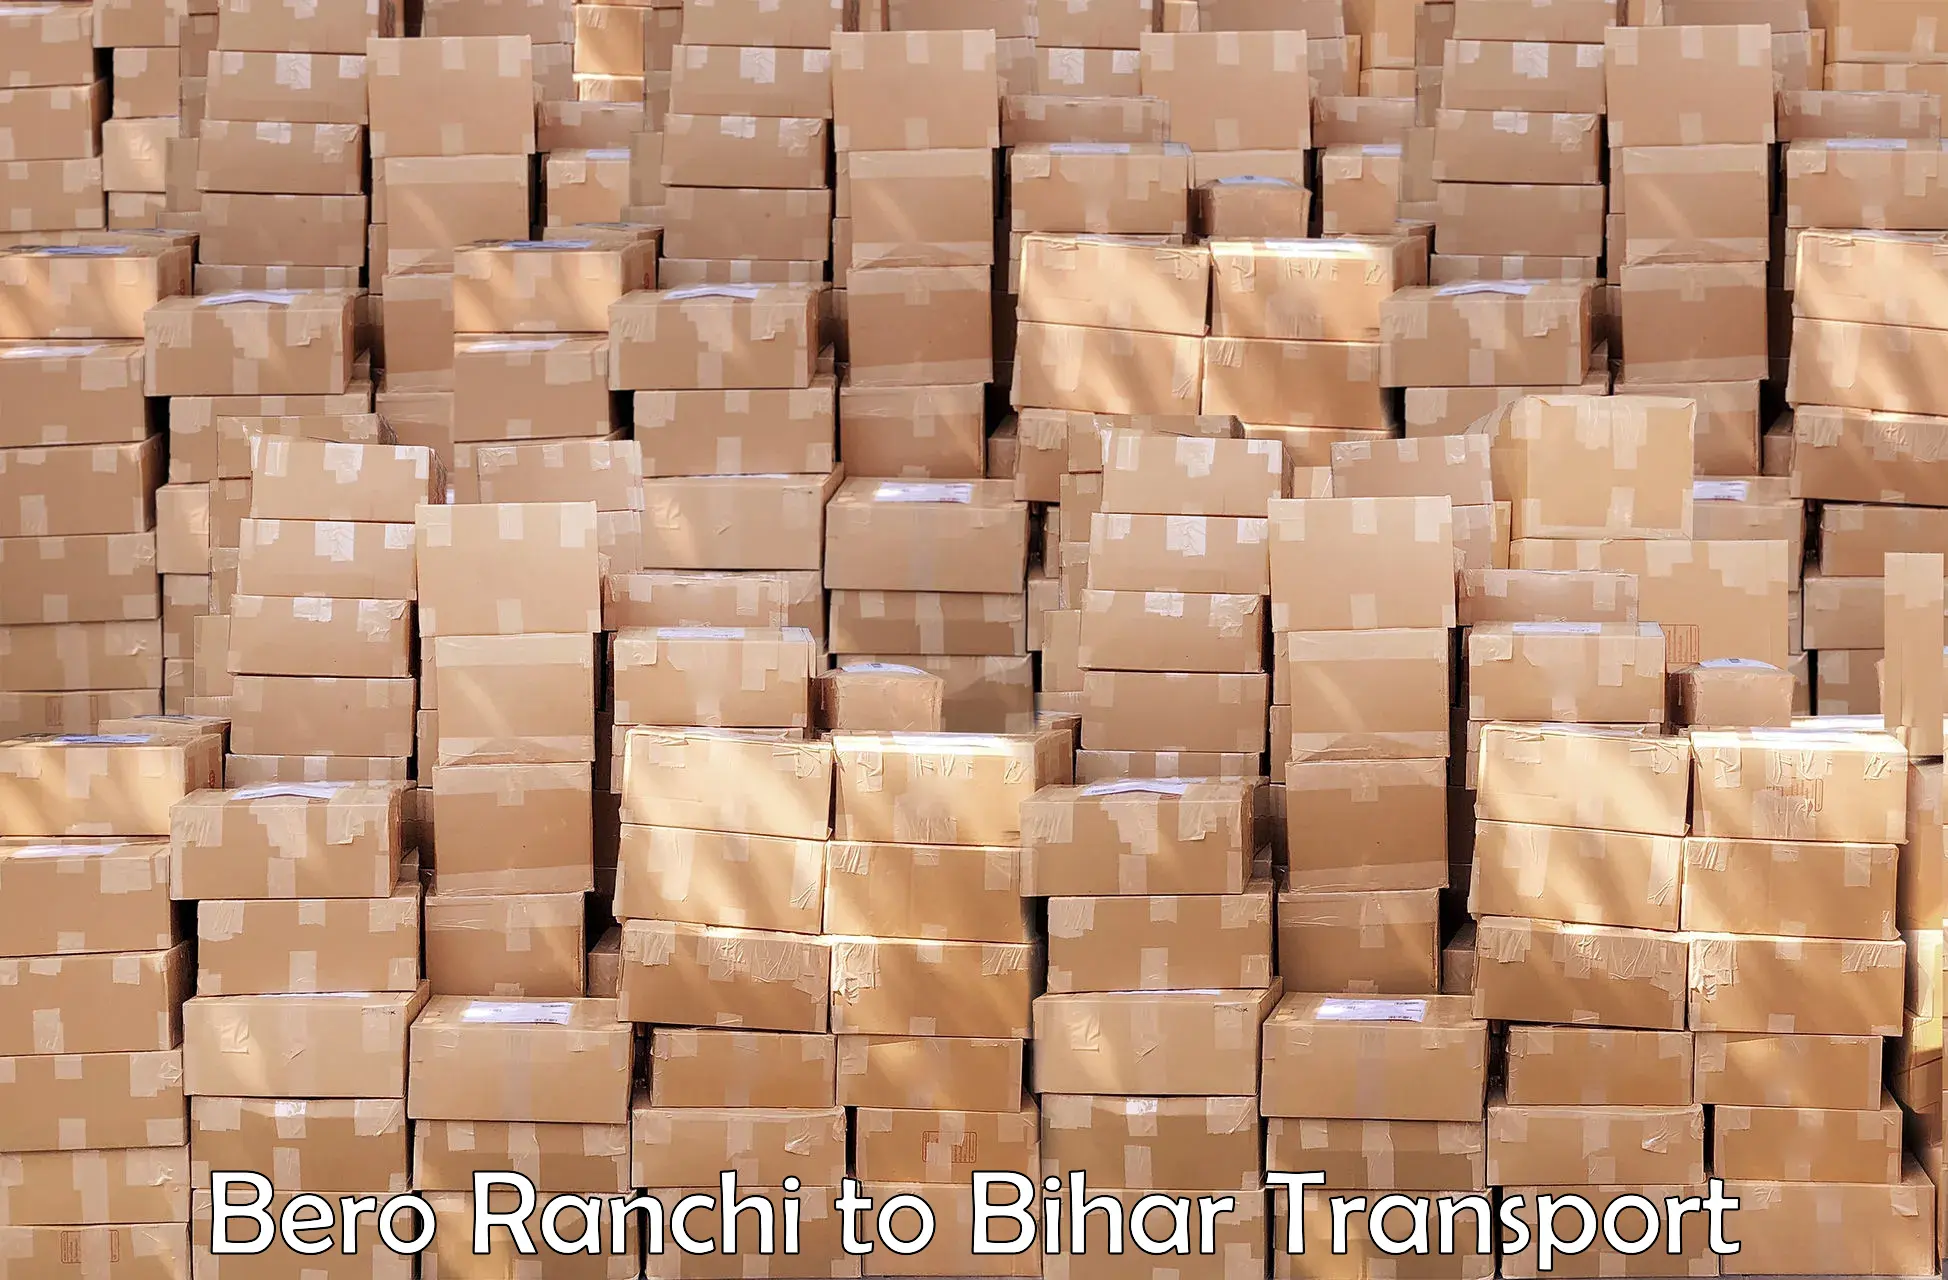 Nearby transport service Bero Ranchi to Manihari